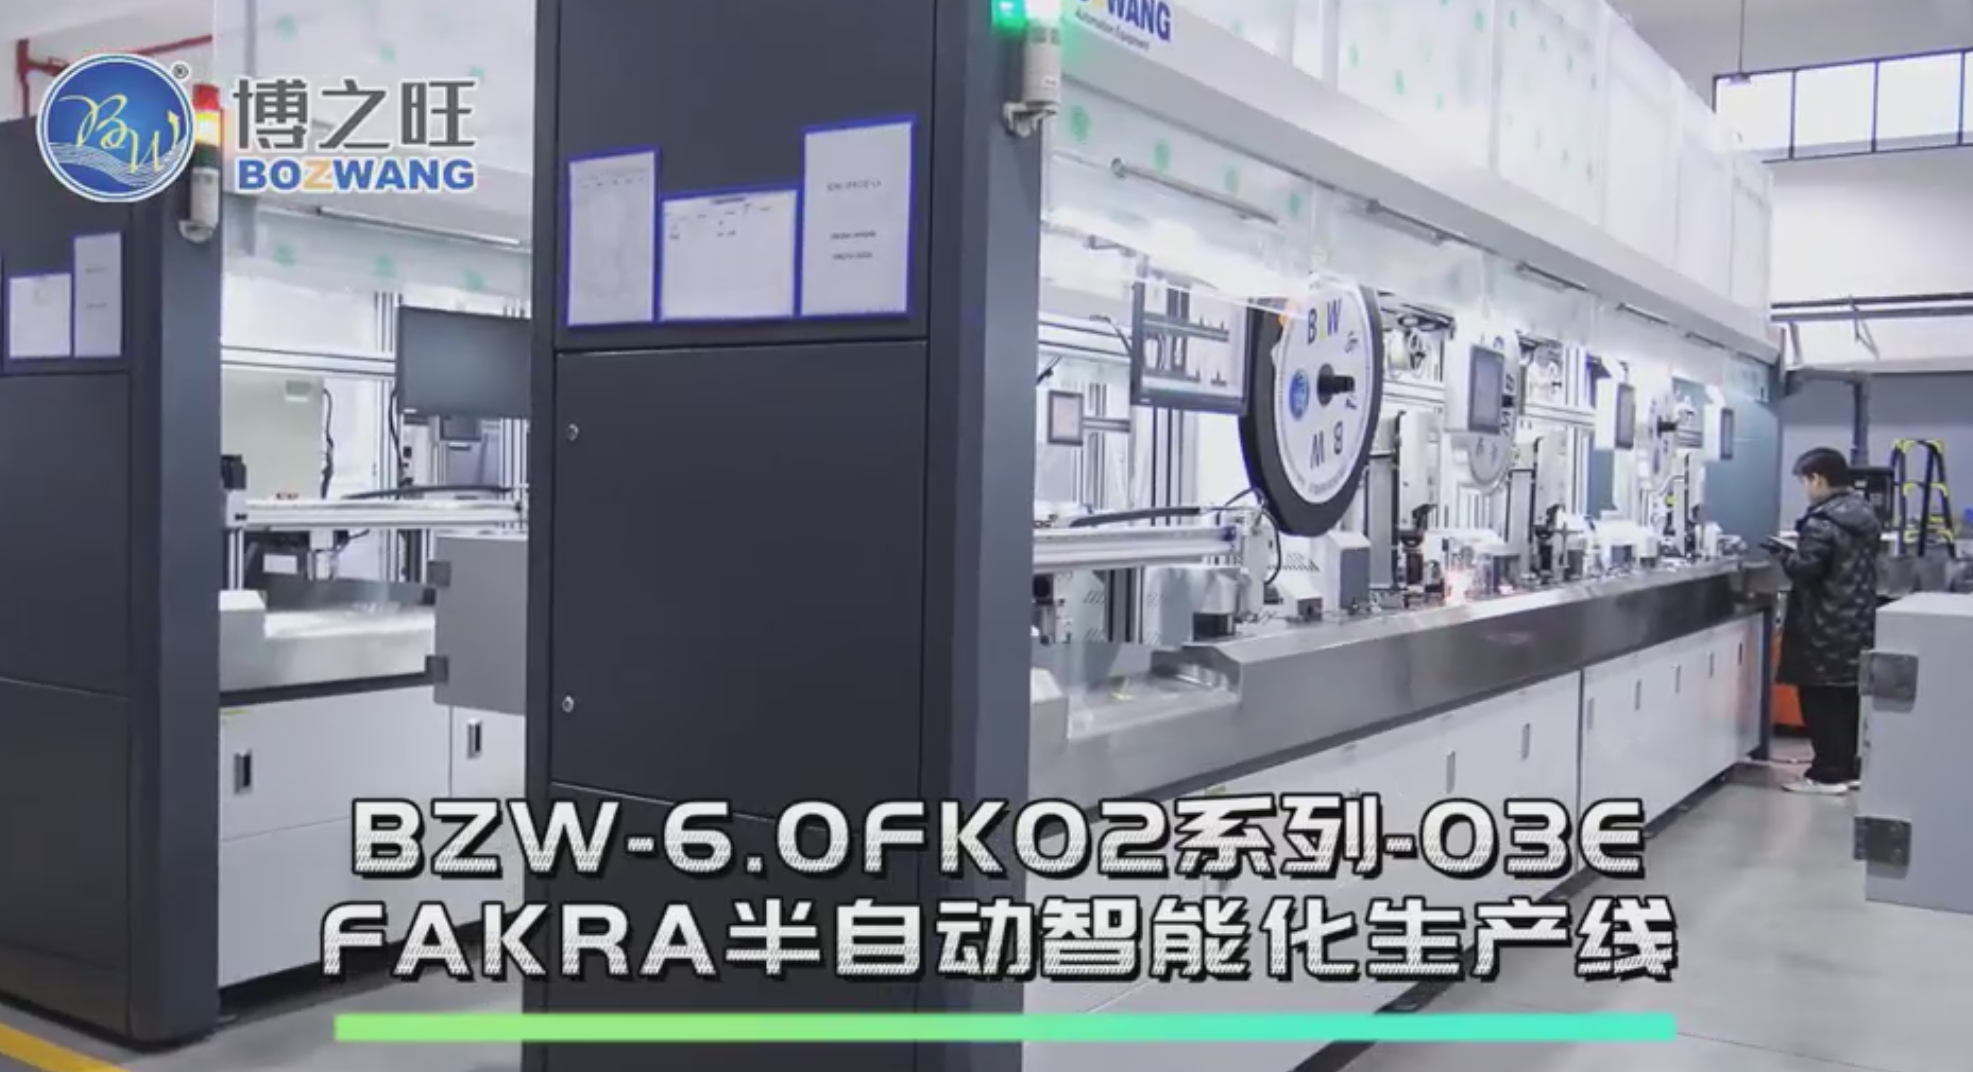  BZW-6.0FK02系列-03E FAKRA半自动智能化生产线